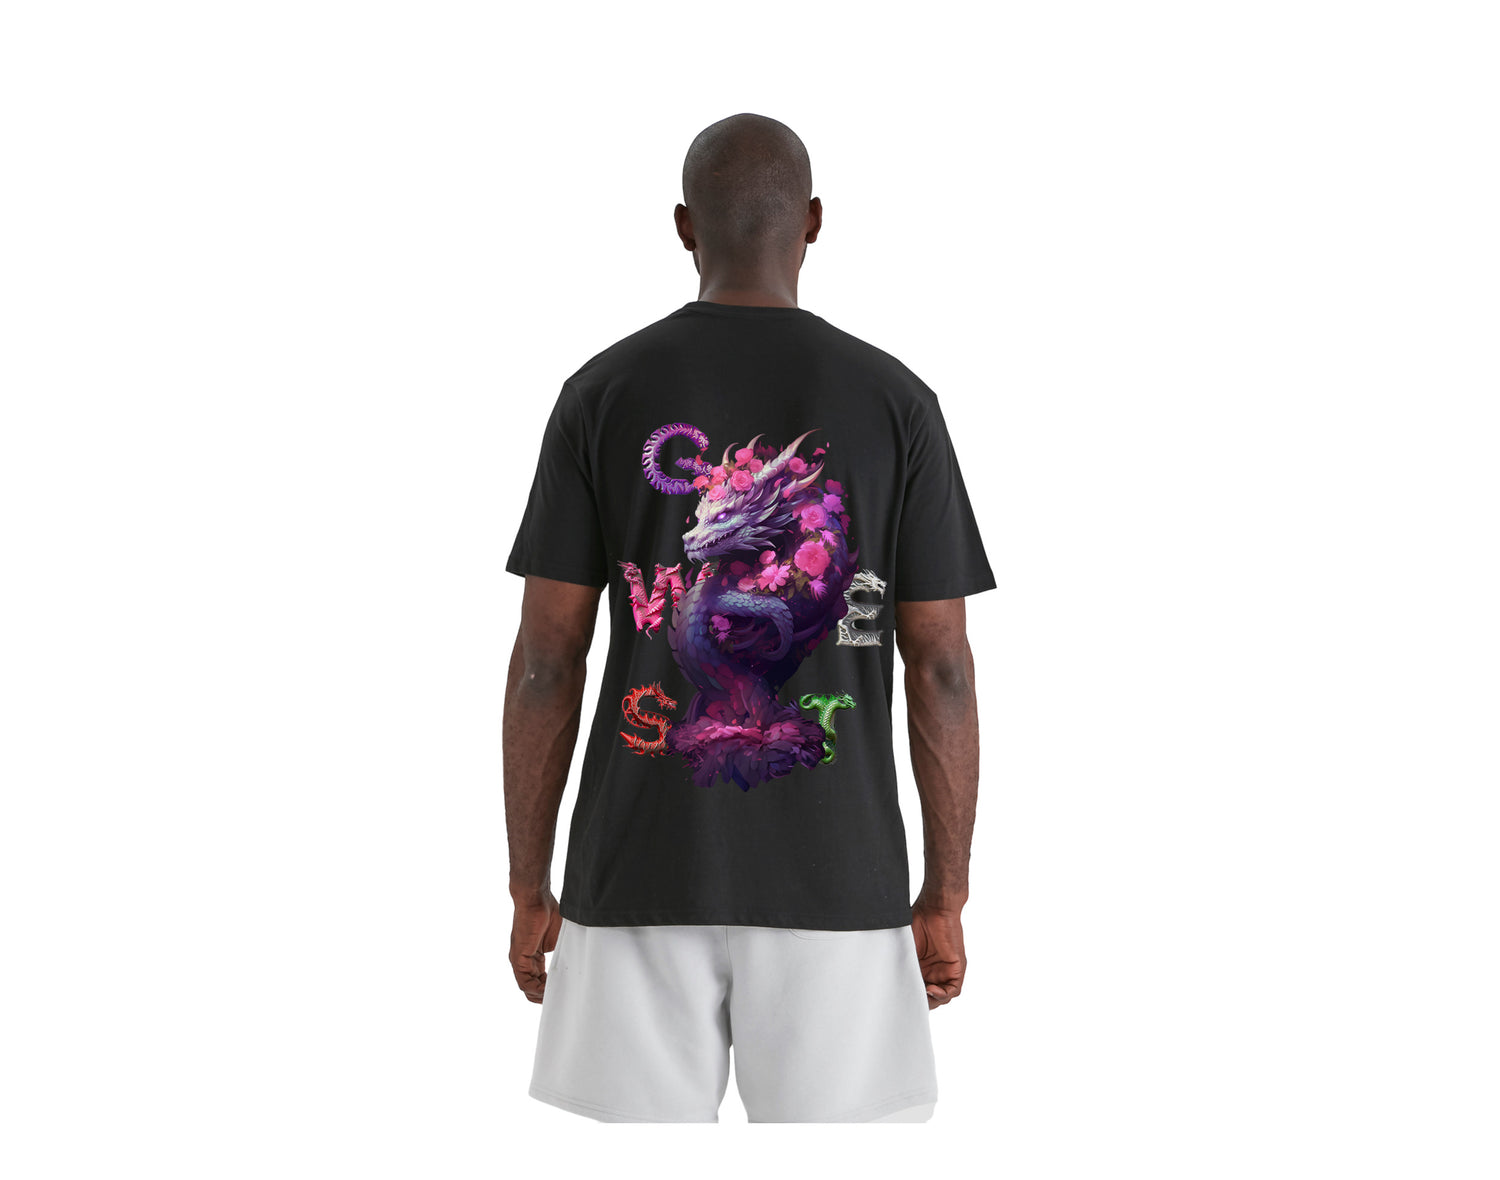 G West Purple Dragon Graphic Crew Neck Men's T-Shirt